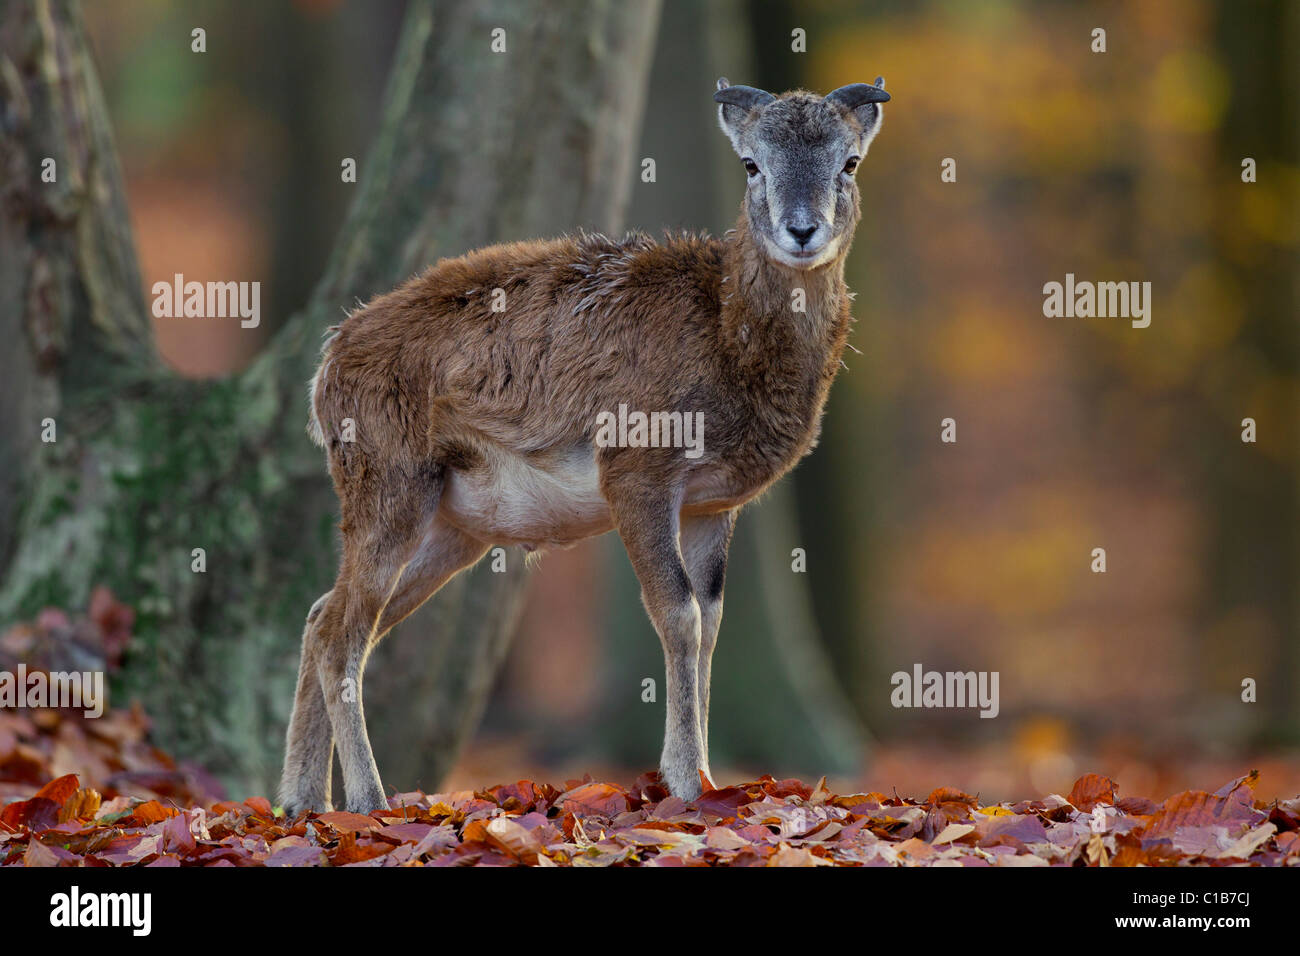 Mouflon (Ovis gmelini européenne / Ovis ammon musimon / Ovis orientalis musimon) agneau dans la forêt en automne, Allemagne Banque D'Images